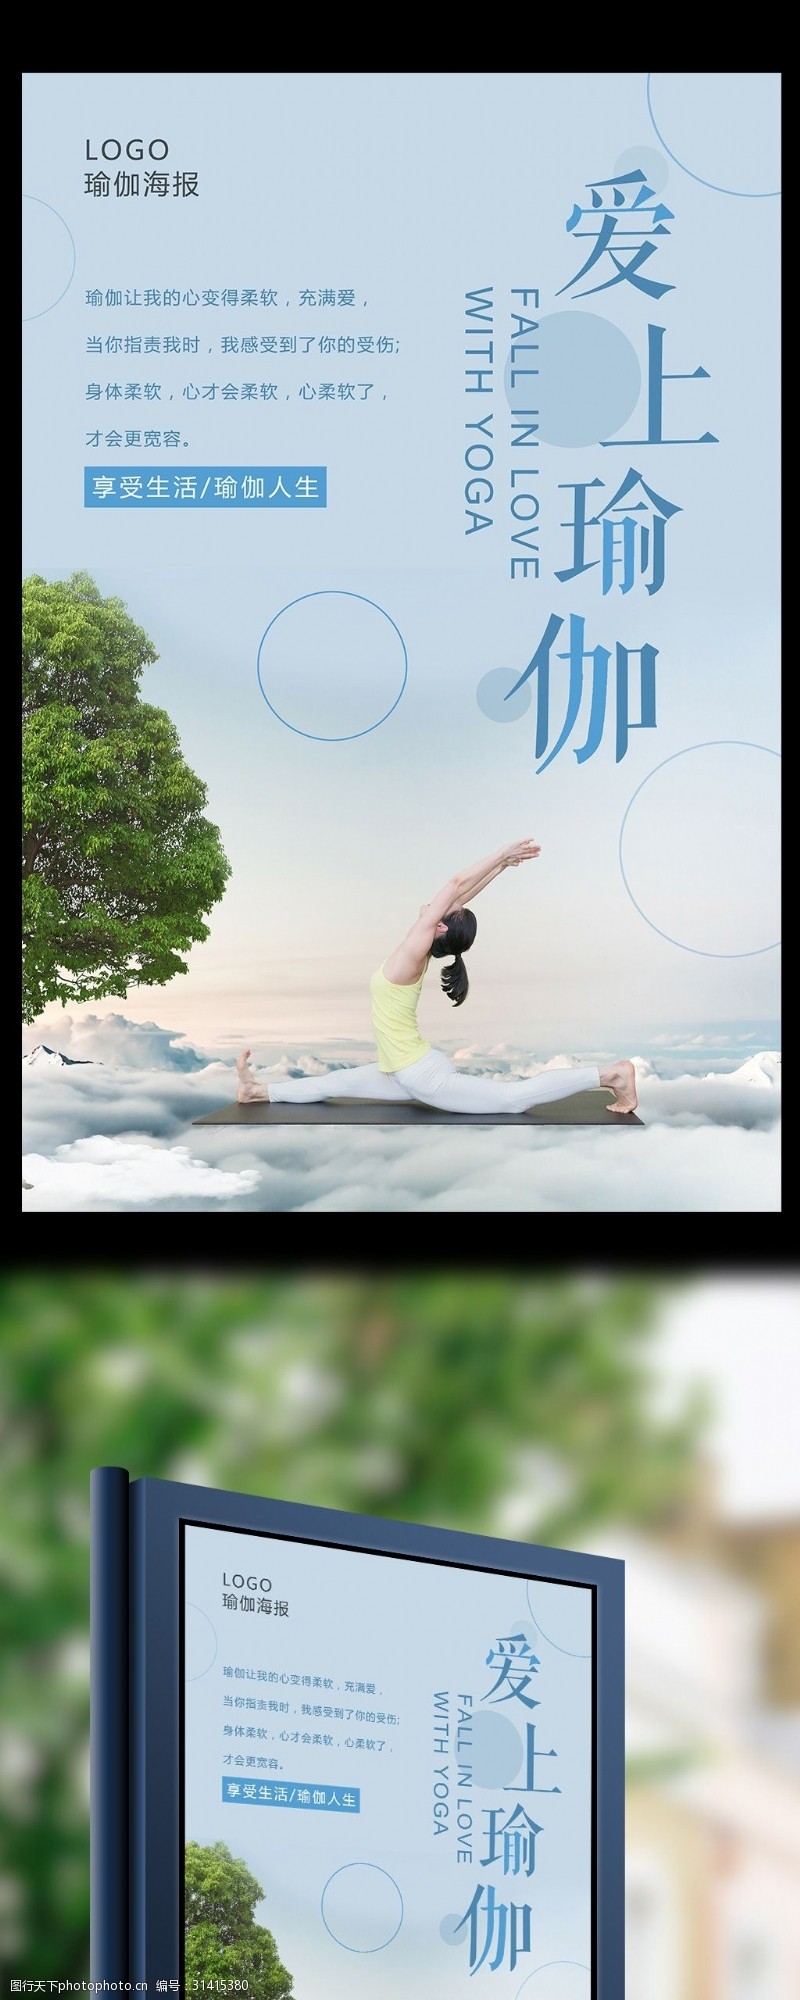 瑜伽中心小清新爱上瑜伽海报设计